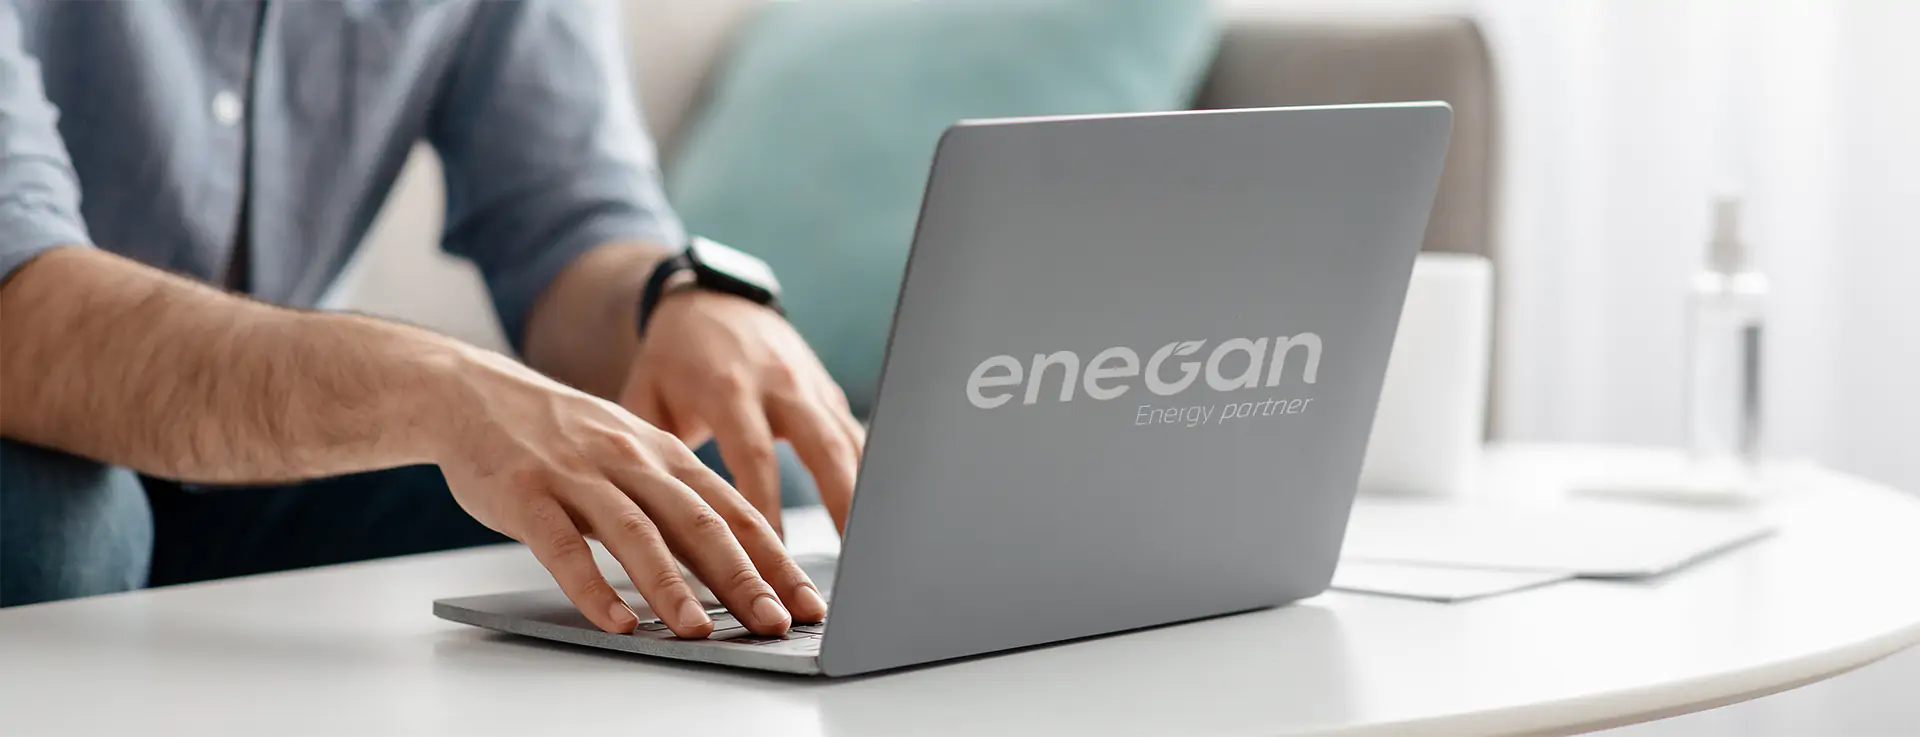 Cultura aziendale Enegan - cultura d’impresa | Enegan, Energy Partner